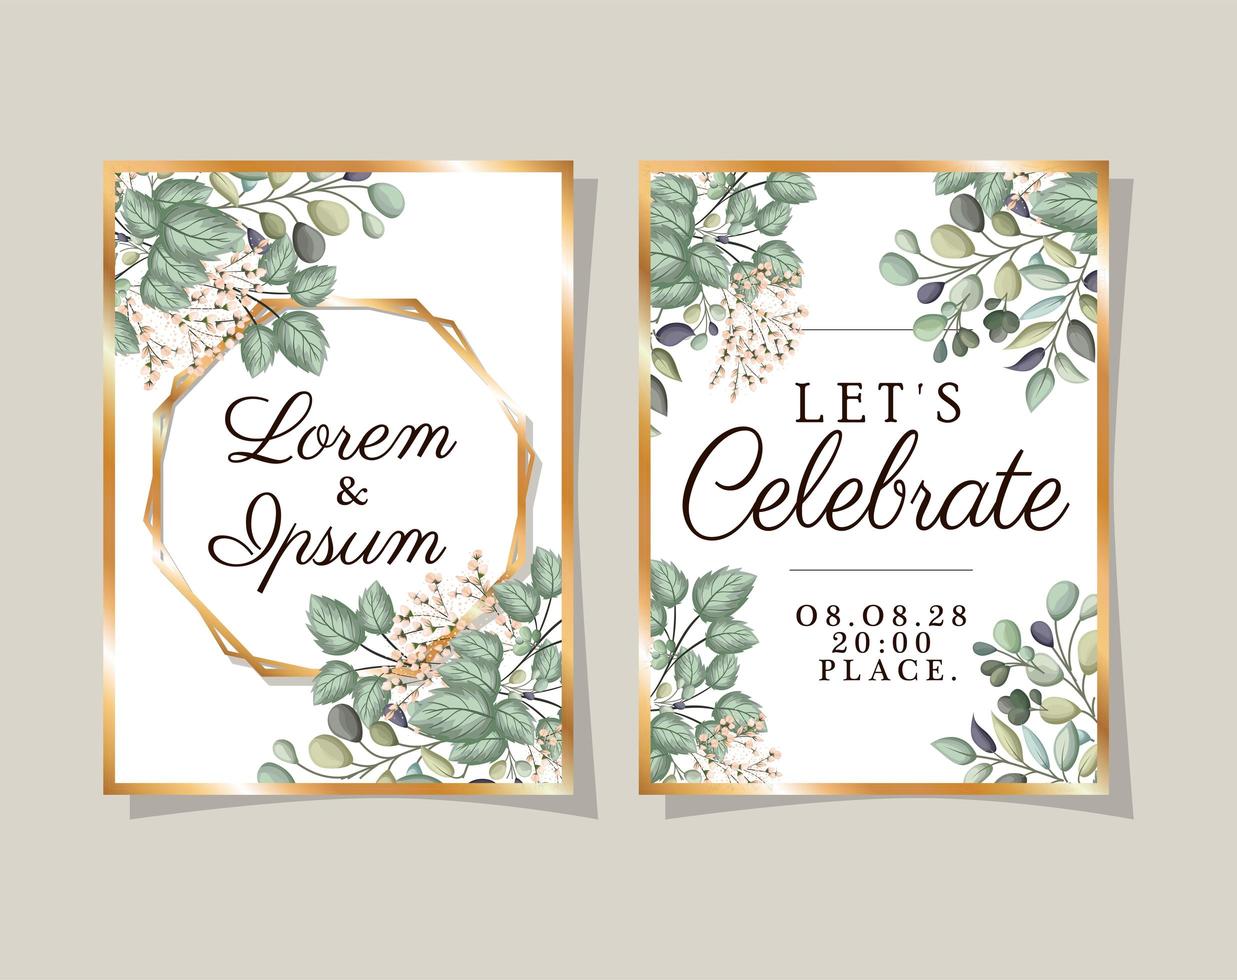 due inviti di nozze con cornici dorate fiori e foglie disegno vettoriale